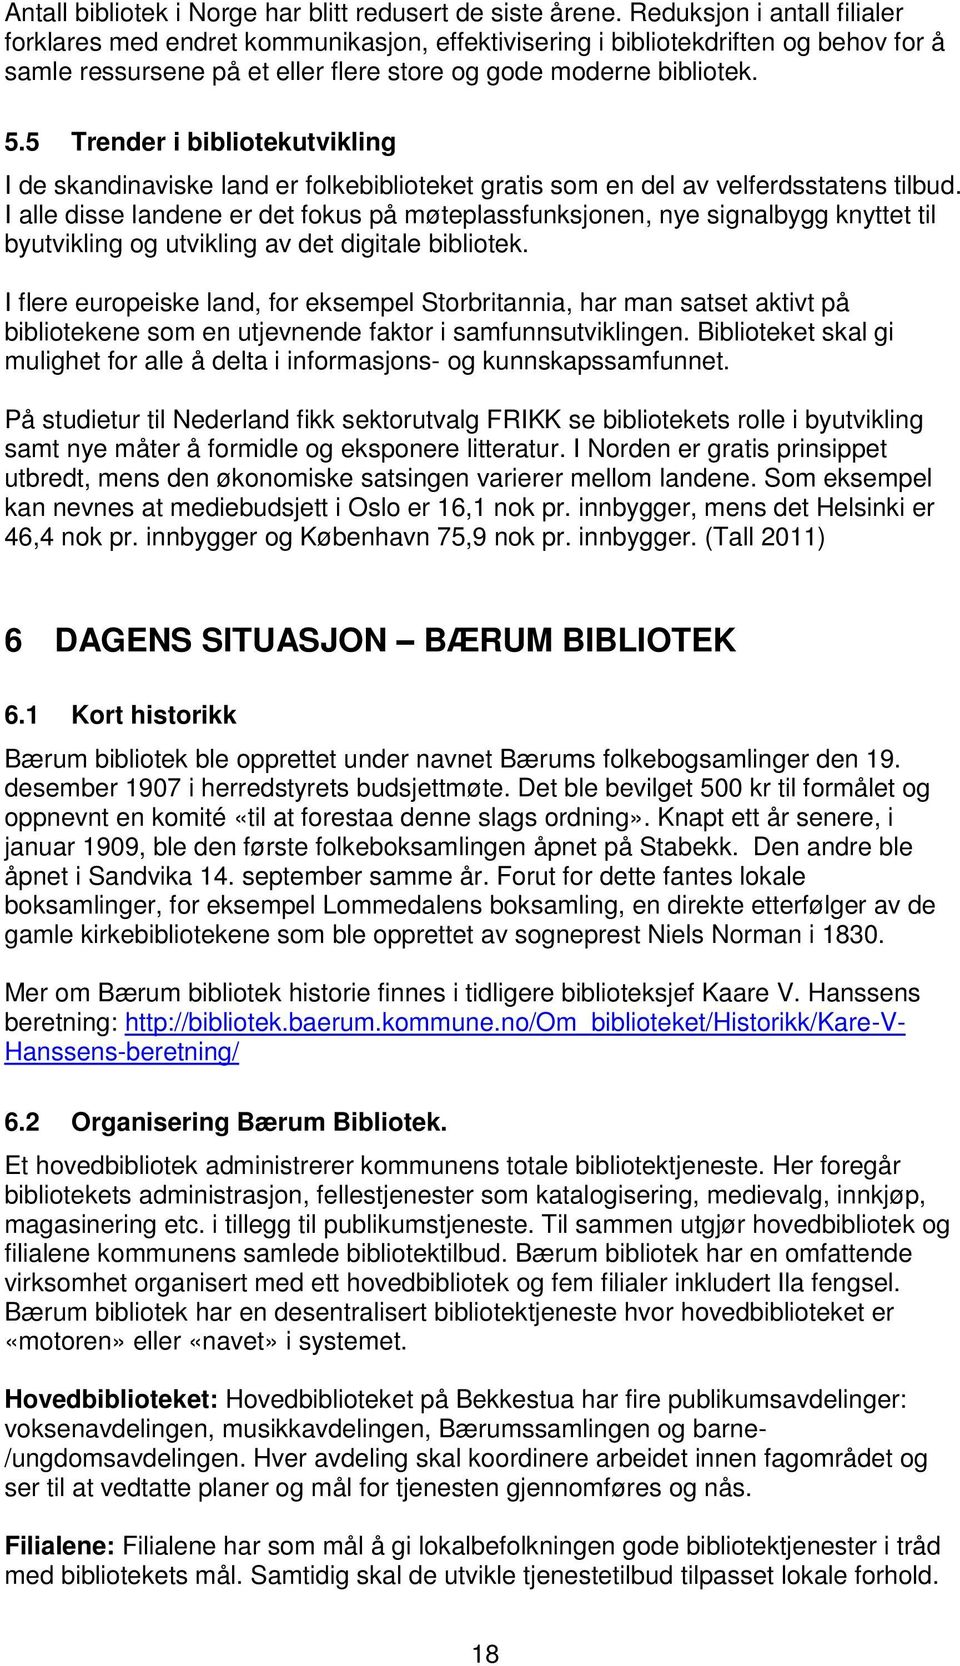 5 Trender i bibliotekutvikling I de skandinaviske land er folkebiblioteket gratis som en del av velferdsstatens tilbud.